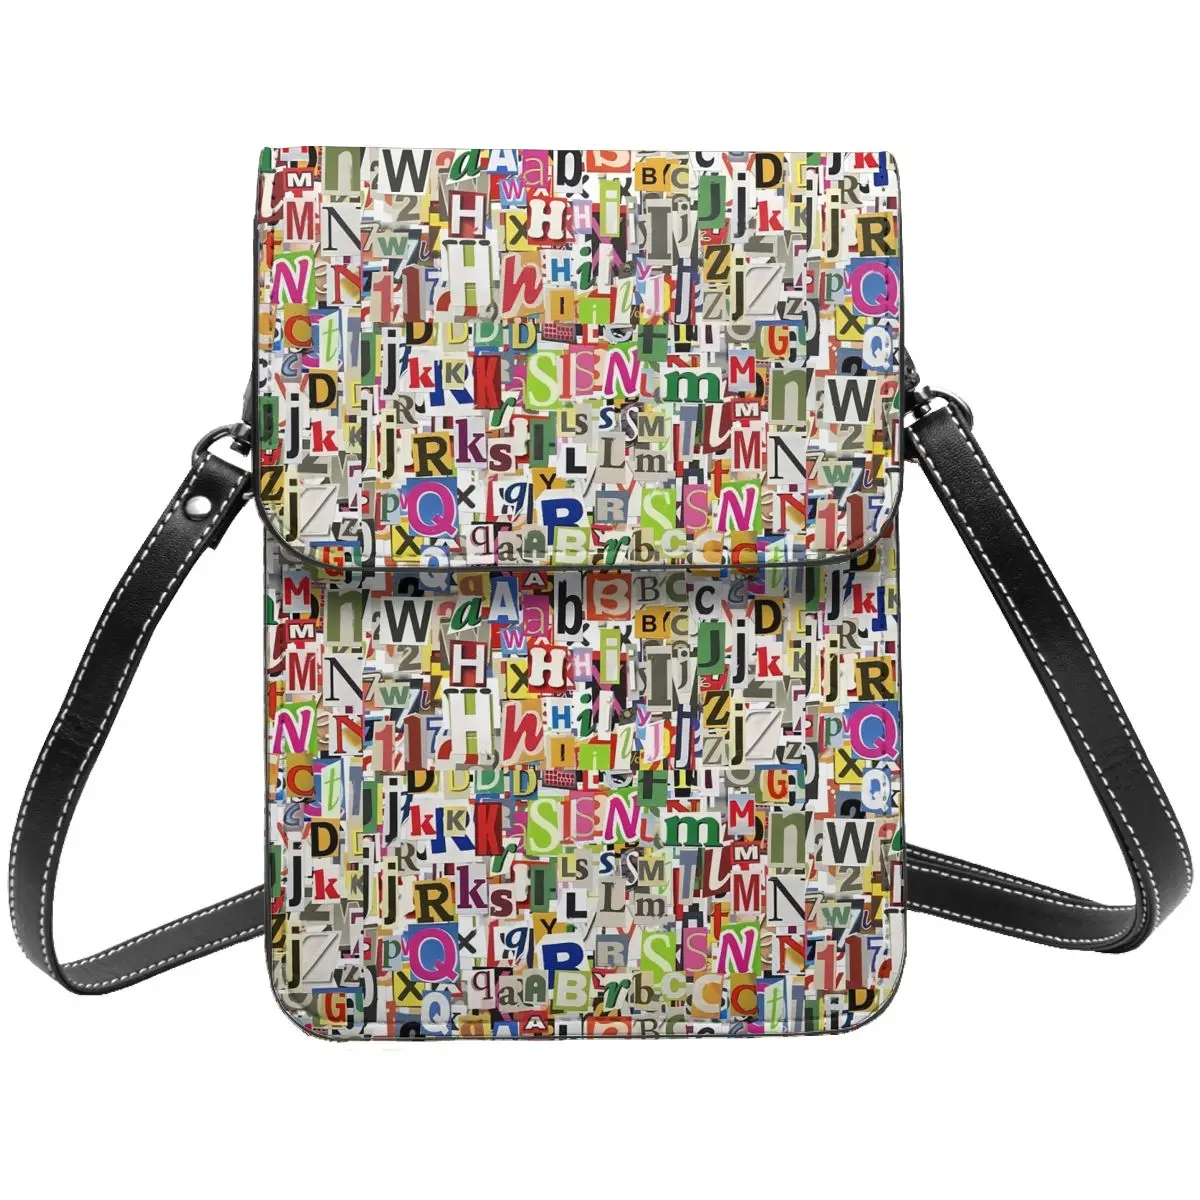 

Сумка на плечо с застежкой для газет, разноцветная кожаная женская сумка с надписью, стильные сумки для студентов и подарков